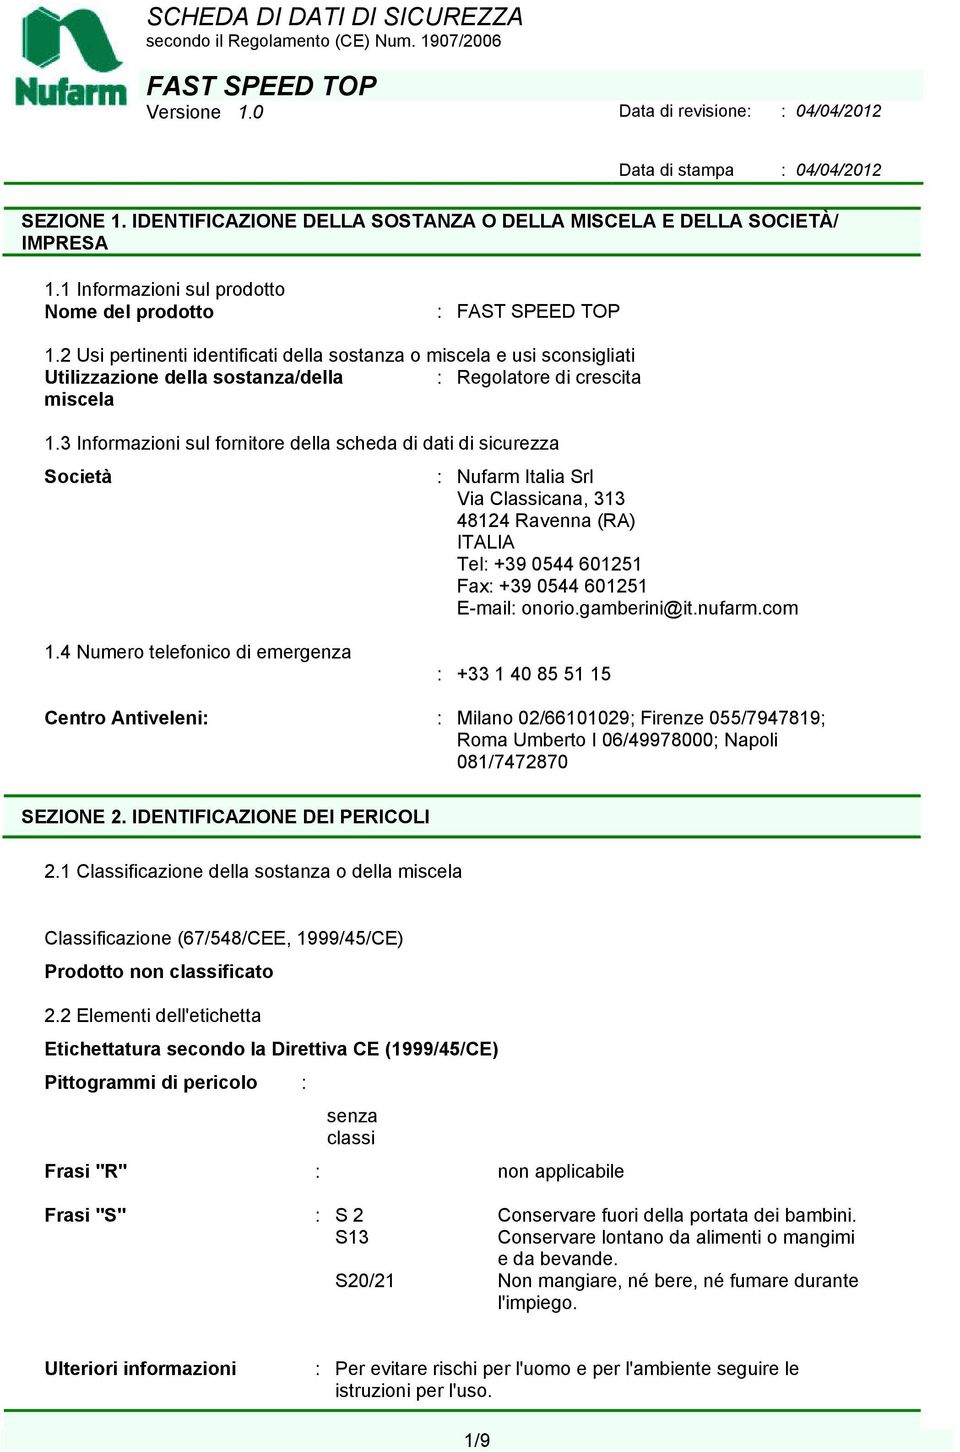 3 Informazioni sul fornitore della scheda di dati di sicurezza Società : Nufarm Italia Srl Via Classicana, 313 48124 Ravenna (RA) ITALIA Tel: +39 0544 601251 Fax: +39 0544 601251 E-mail: onorio.